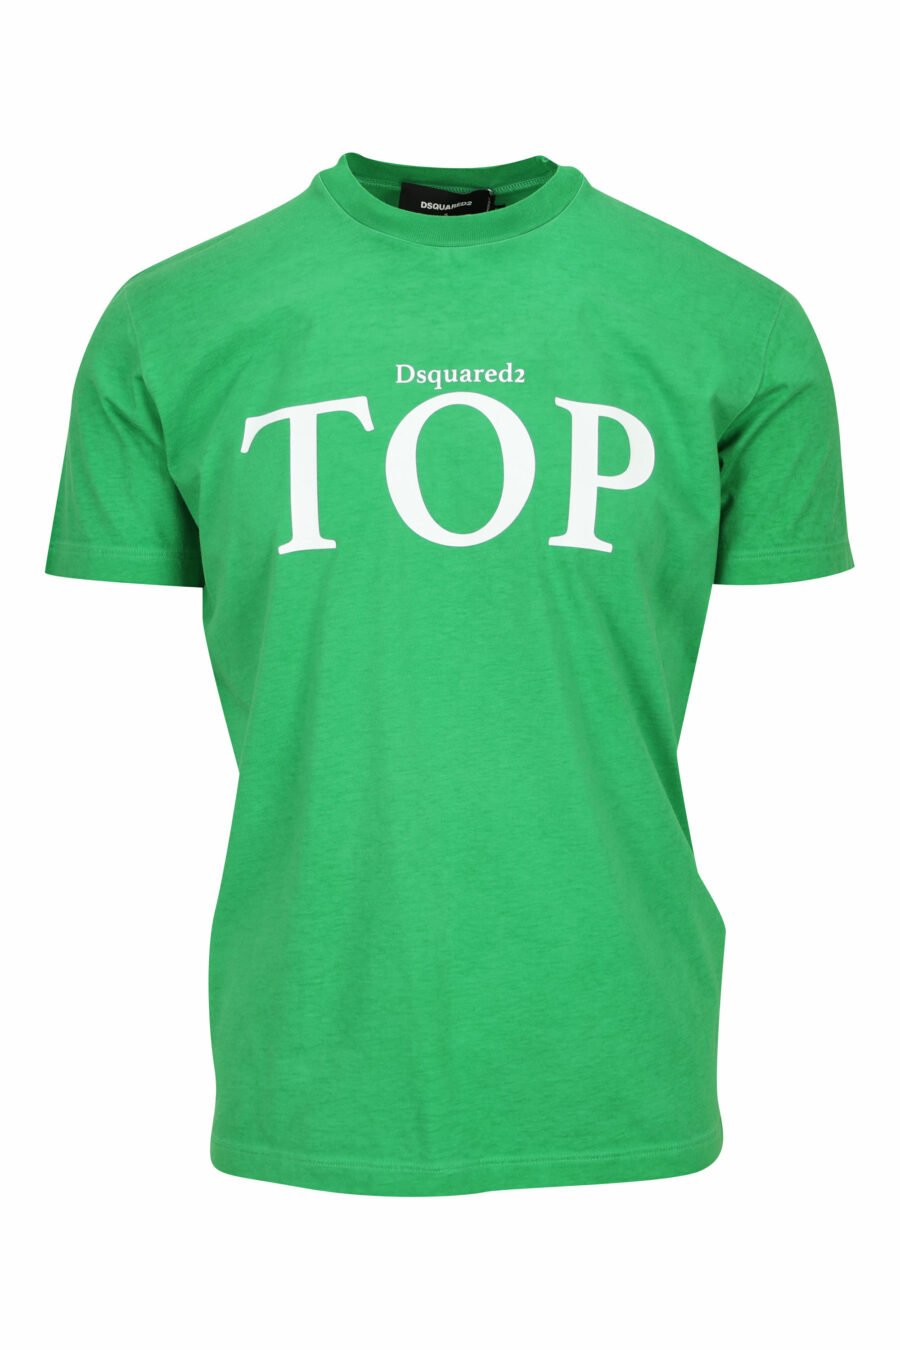 Camiseta verde con maxilogo "top" - 8054148449322